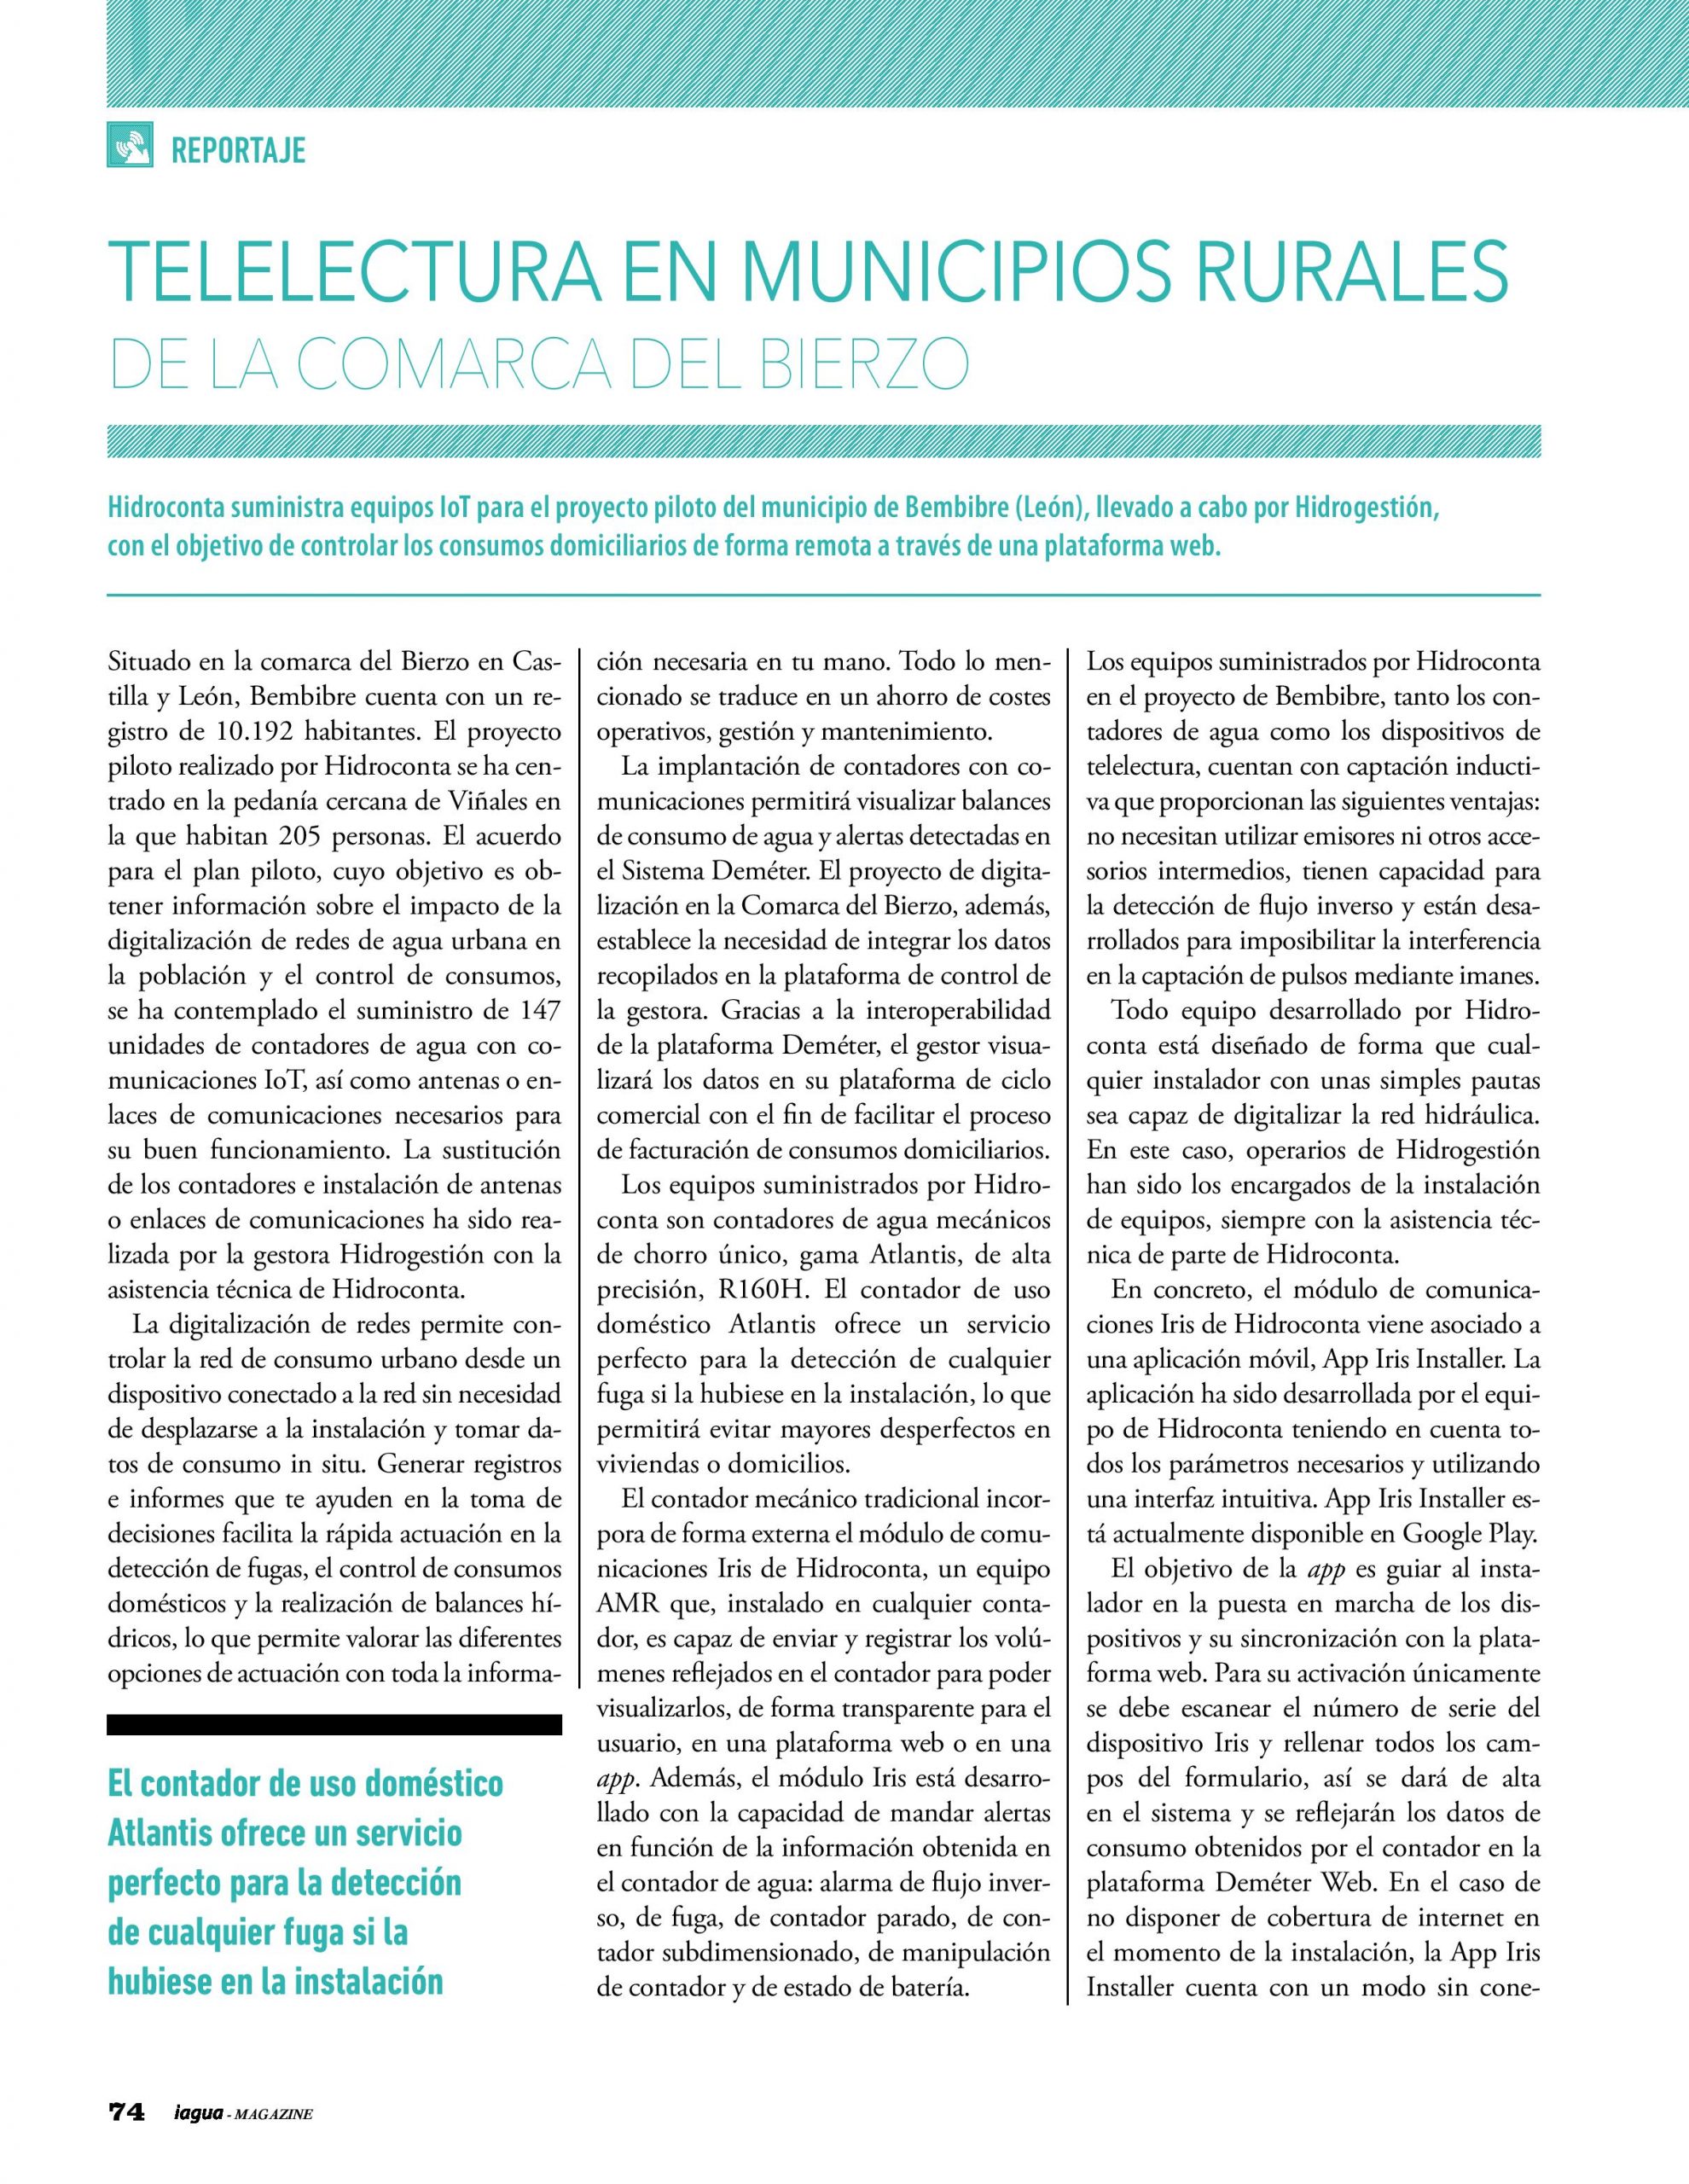 Reportaje- Telelectura en Municipios Rurales de la Comarca del Bierzo